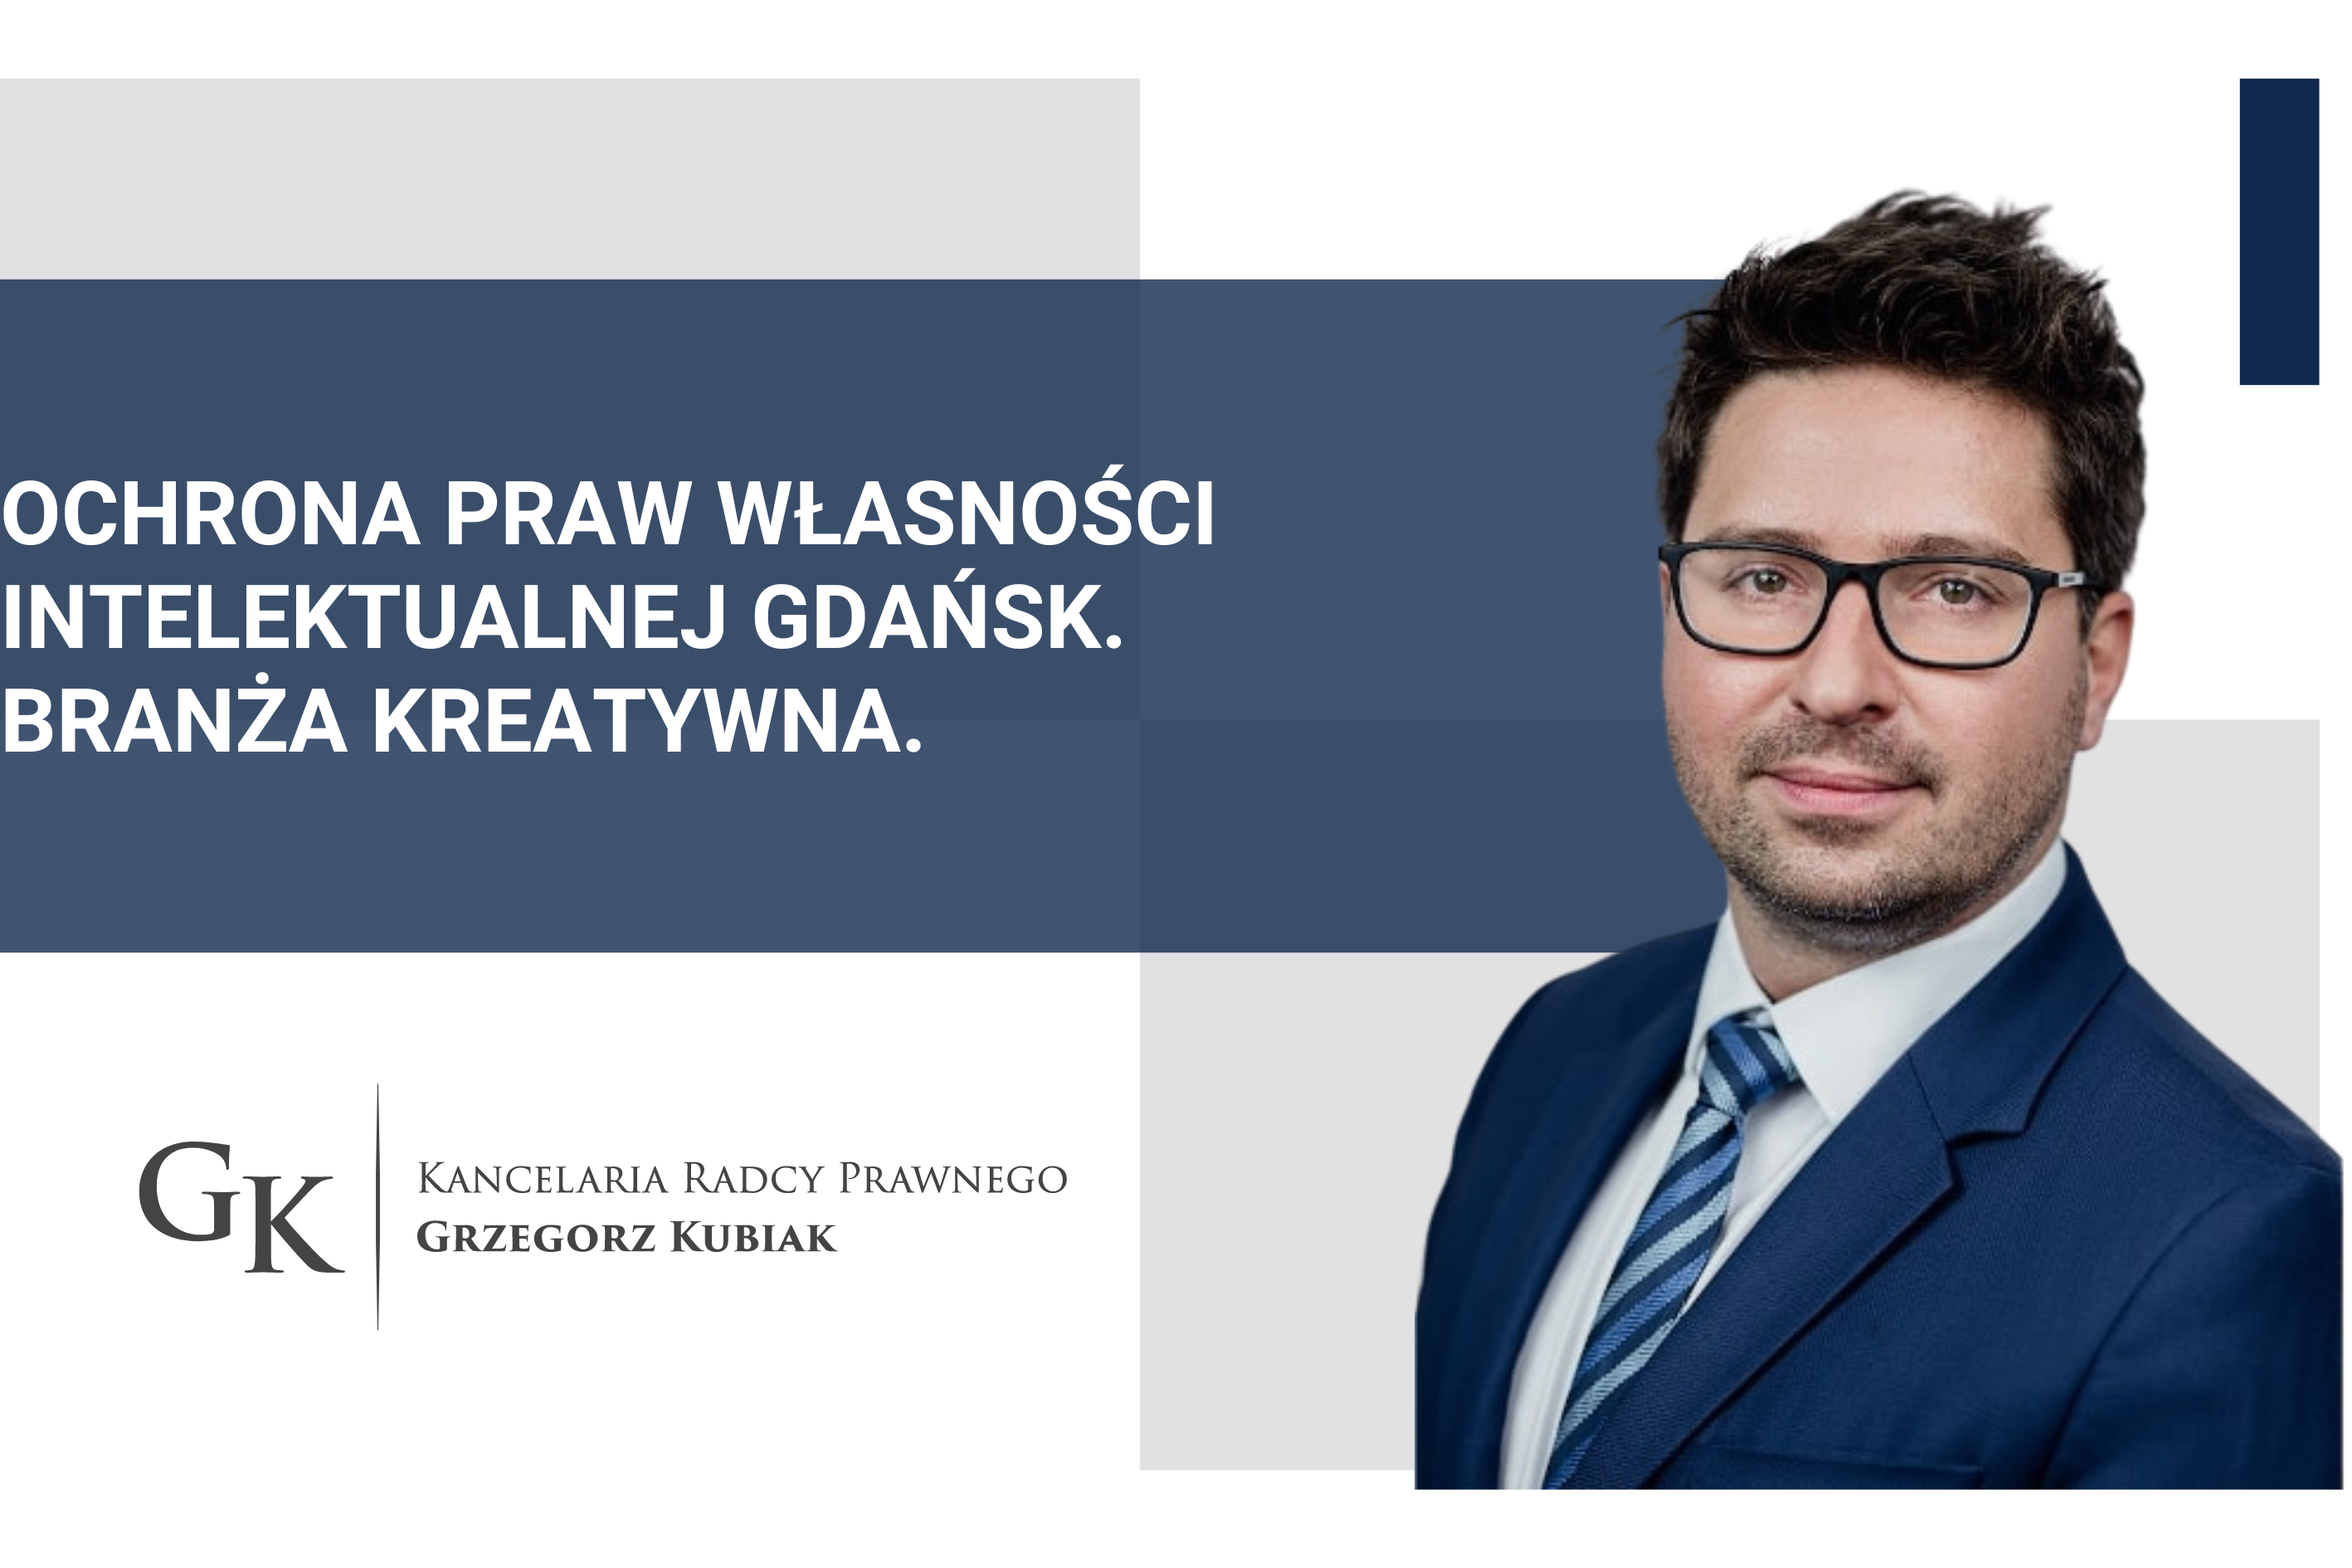 Ochrona praw własności intelektualnej Gdańsk. Branża kreatywna.